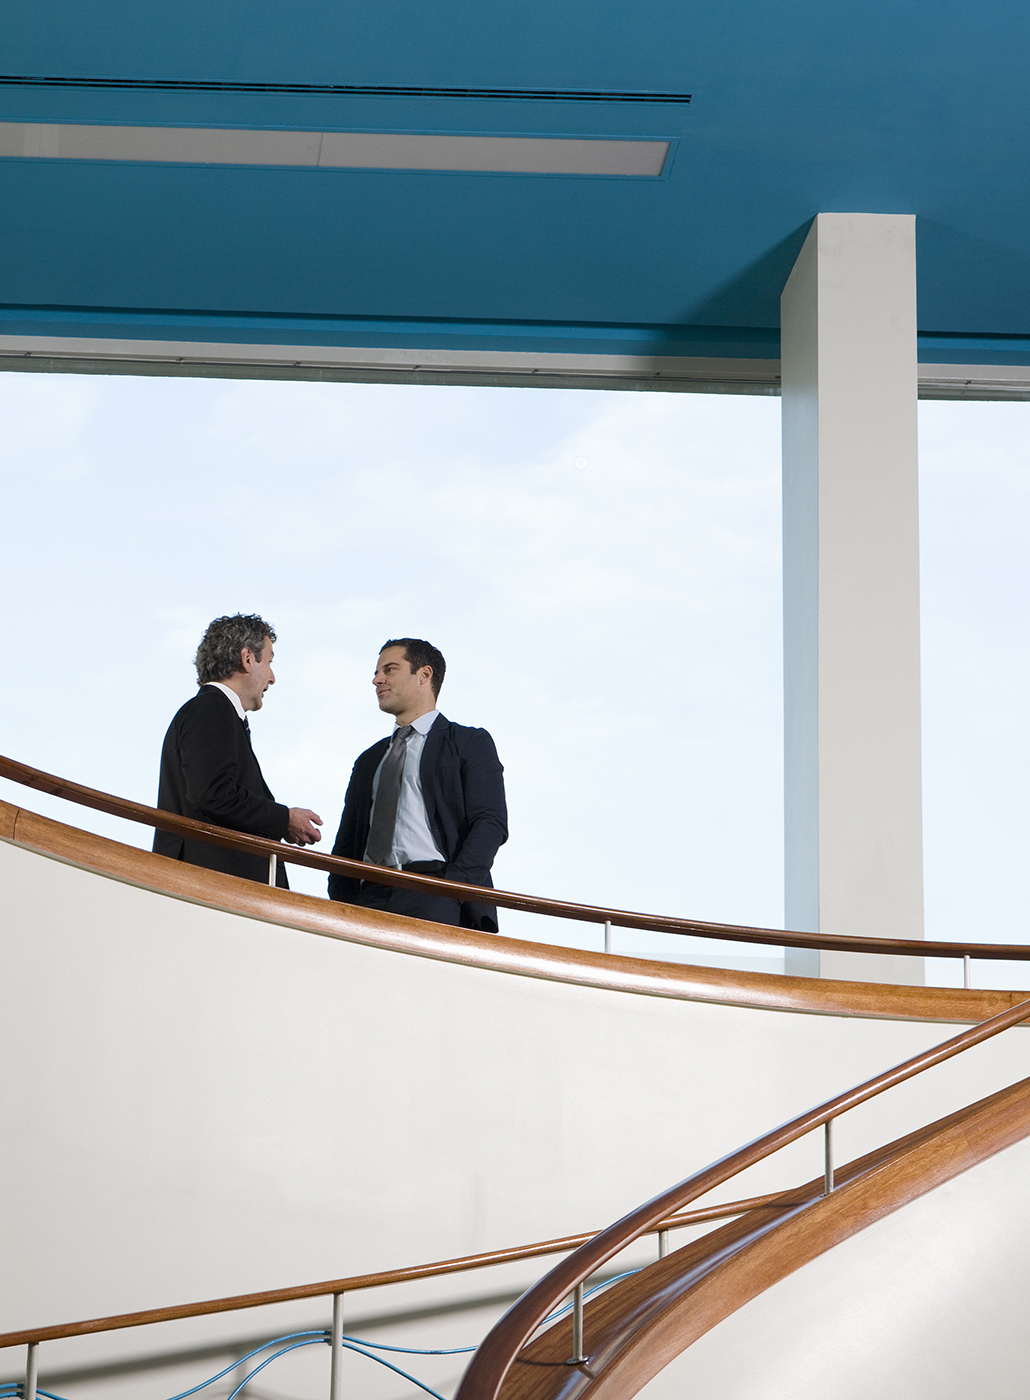 Dos hombres de negocios conversan en un balcón.